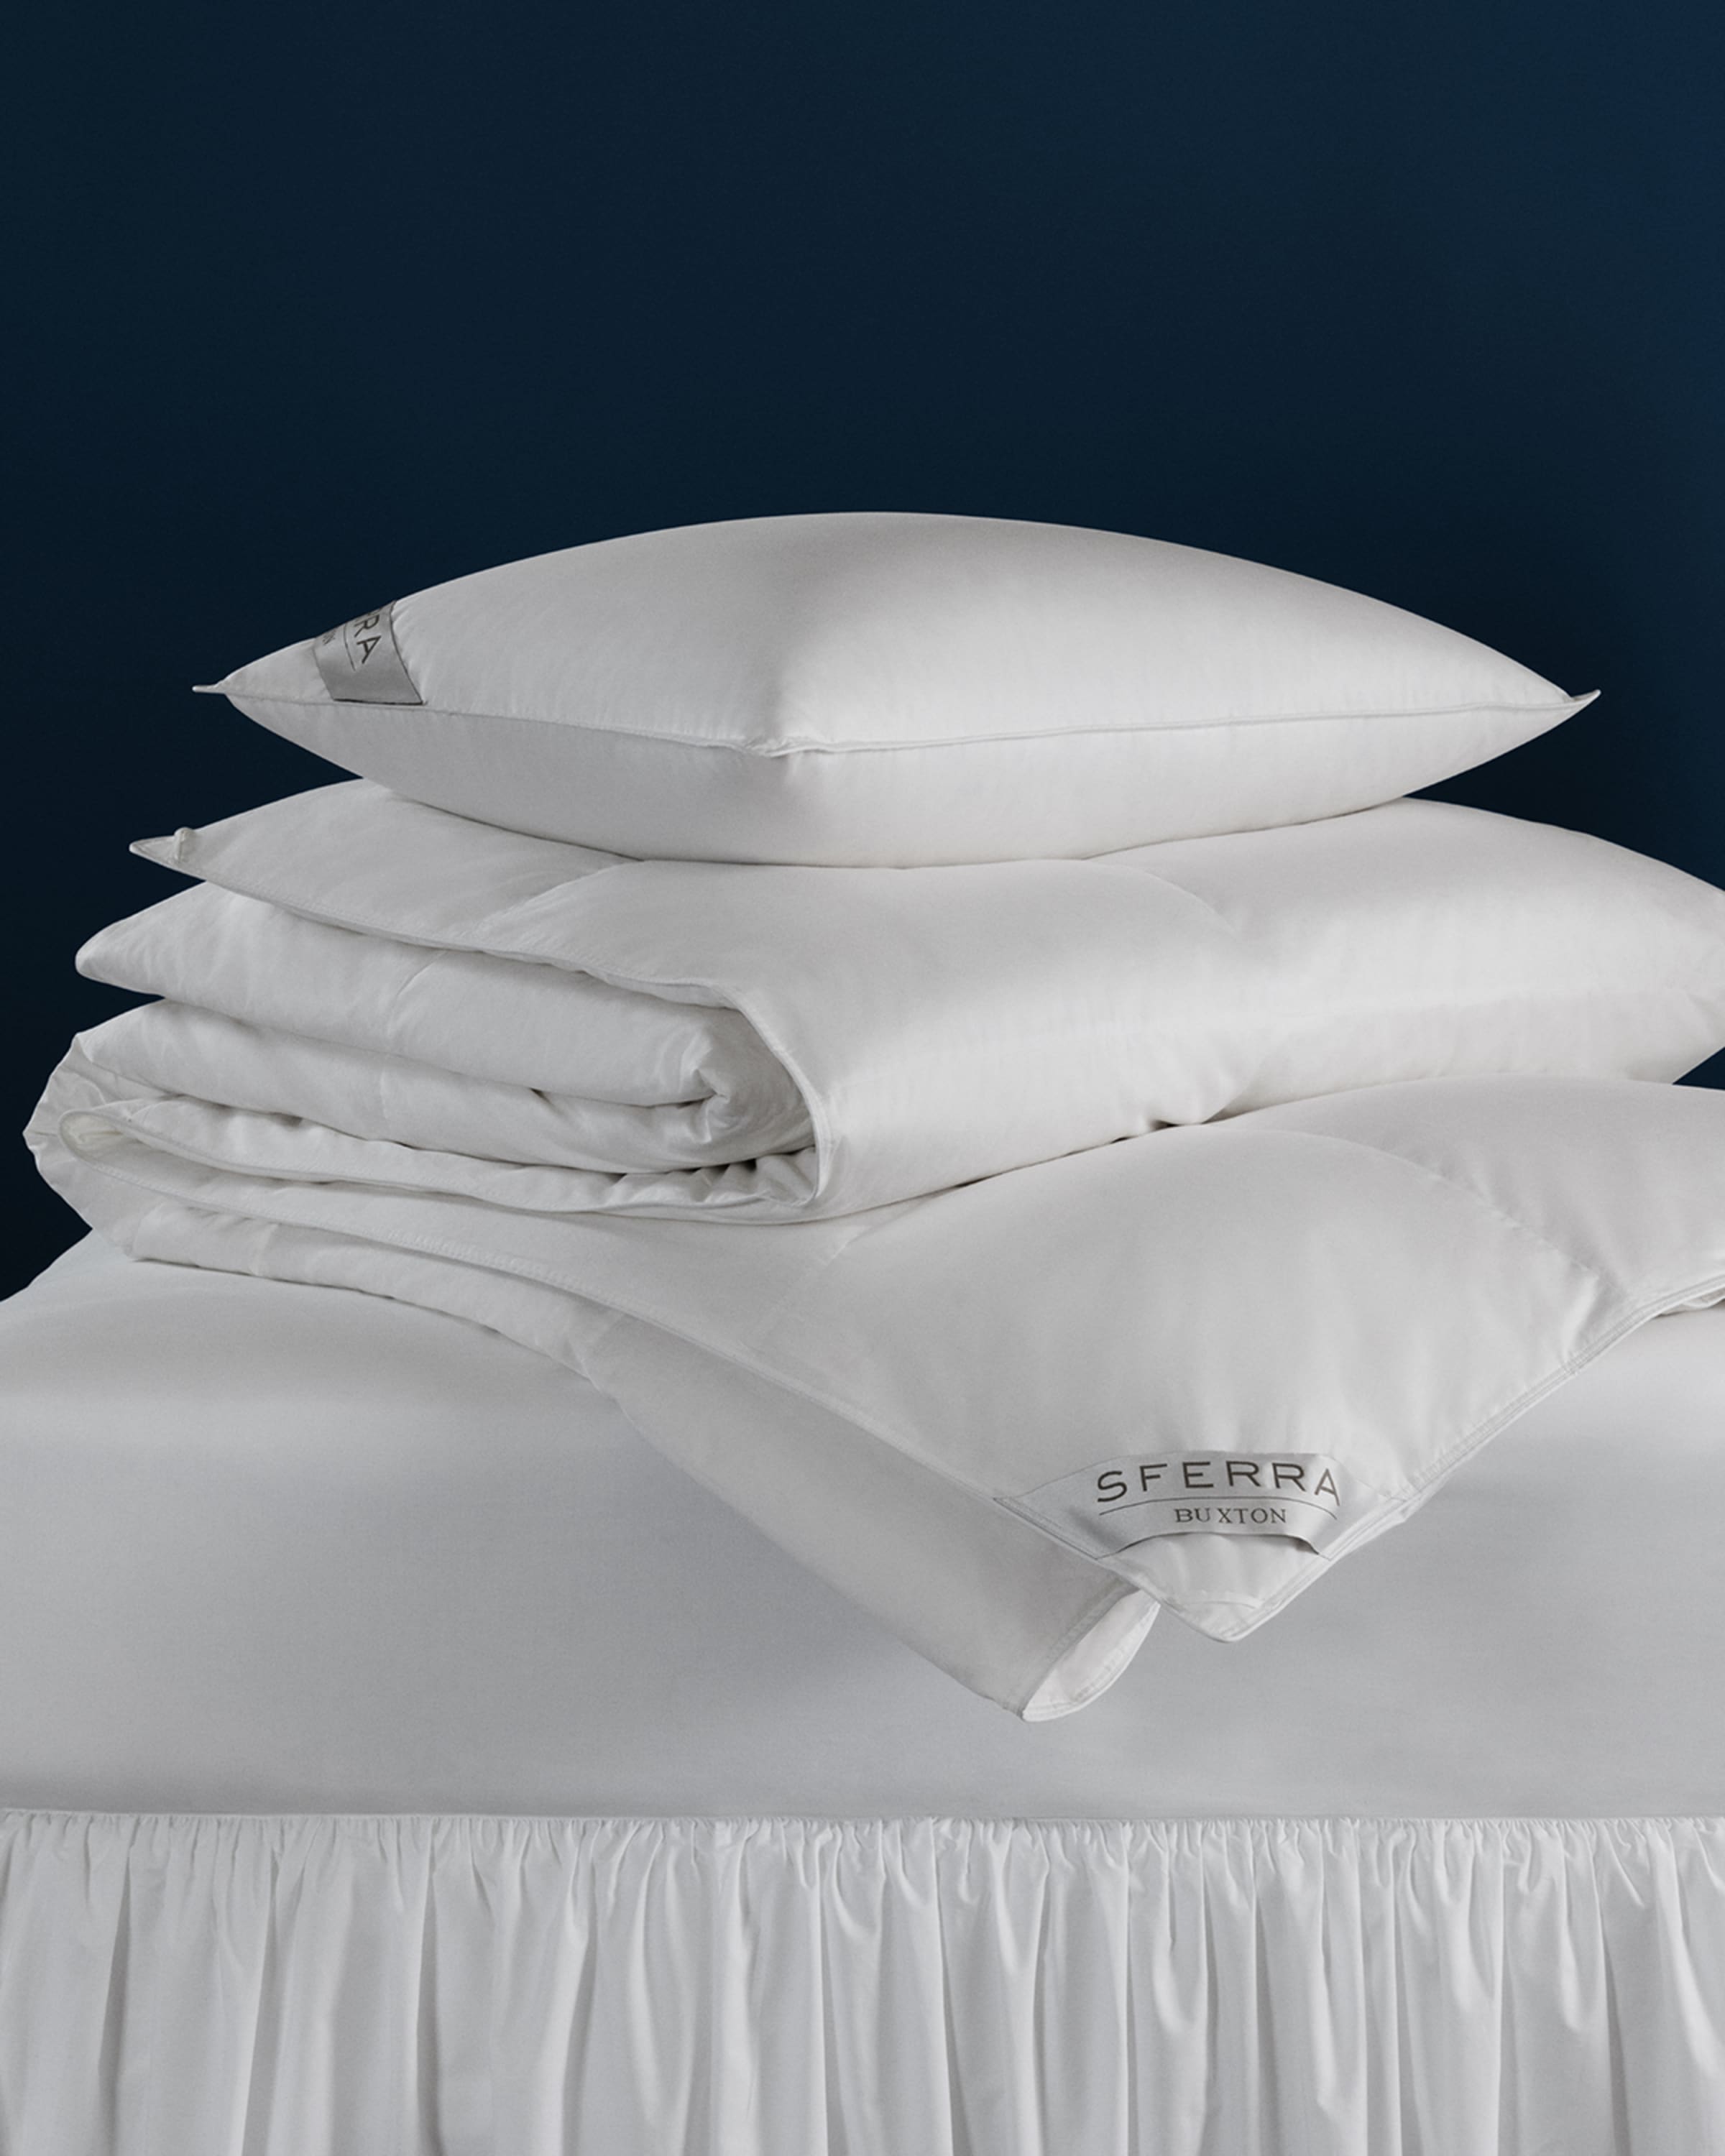 Sferra 600-Fill European Down Soft Standard Pillow